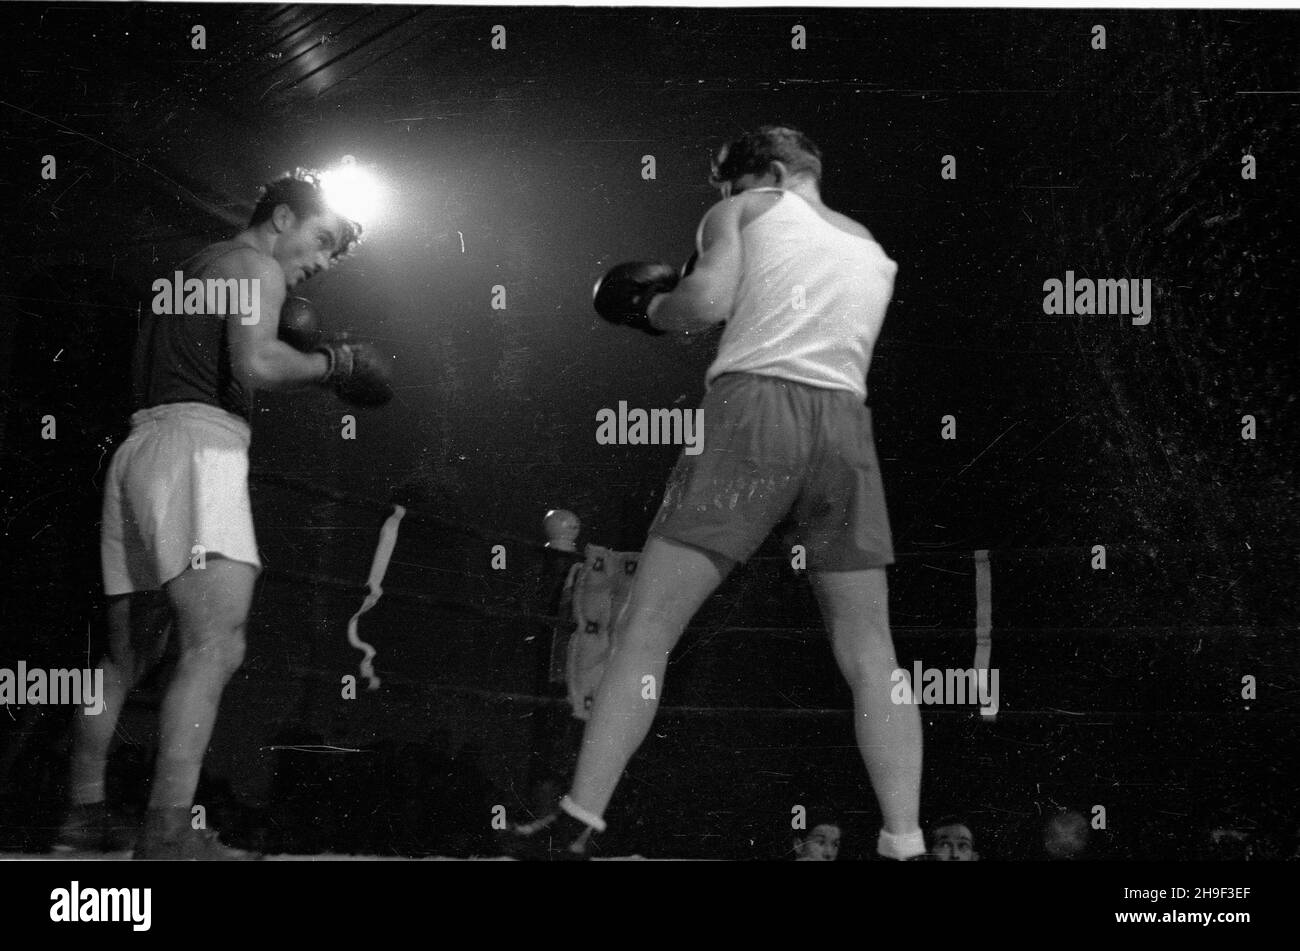 Warszawa, 1947-12-30. Hala Uje¿d¿alni. Spotkanie bokserskie Polska Œrodkowa-Wêgry. Nz. walka w kategorii œredniej: Polak Trzêsowski (P) kontra Wêgier Papp (L), zakoñczona zwyciêstwem Pappa. Turniej zakoñczy³ siê dru¿ynowym zwyciêstwem Wêgrów 10:6.   bk  PAP      Warsaw, Dec. 30, 1947. The Ujezdzalnia Hall. A boxing match Central Poland - Hungary. Pictured: a middleweight category fight: Pole Trzesowski (right) versus Hungary's Papp (left), with Papp winning. Hungary won the tournament as a team 10:6.  bk  PAP Stock Photo